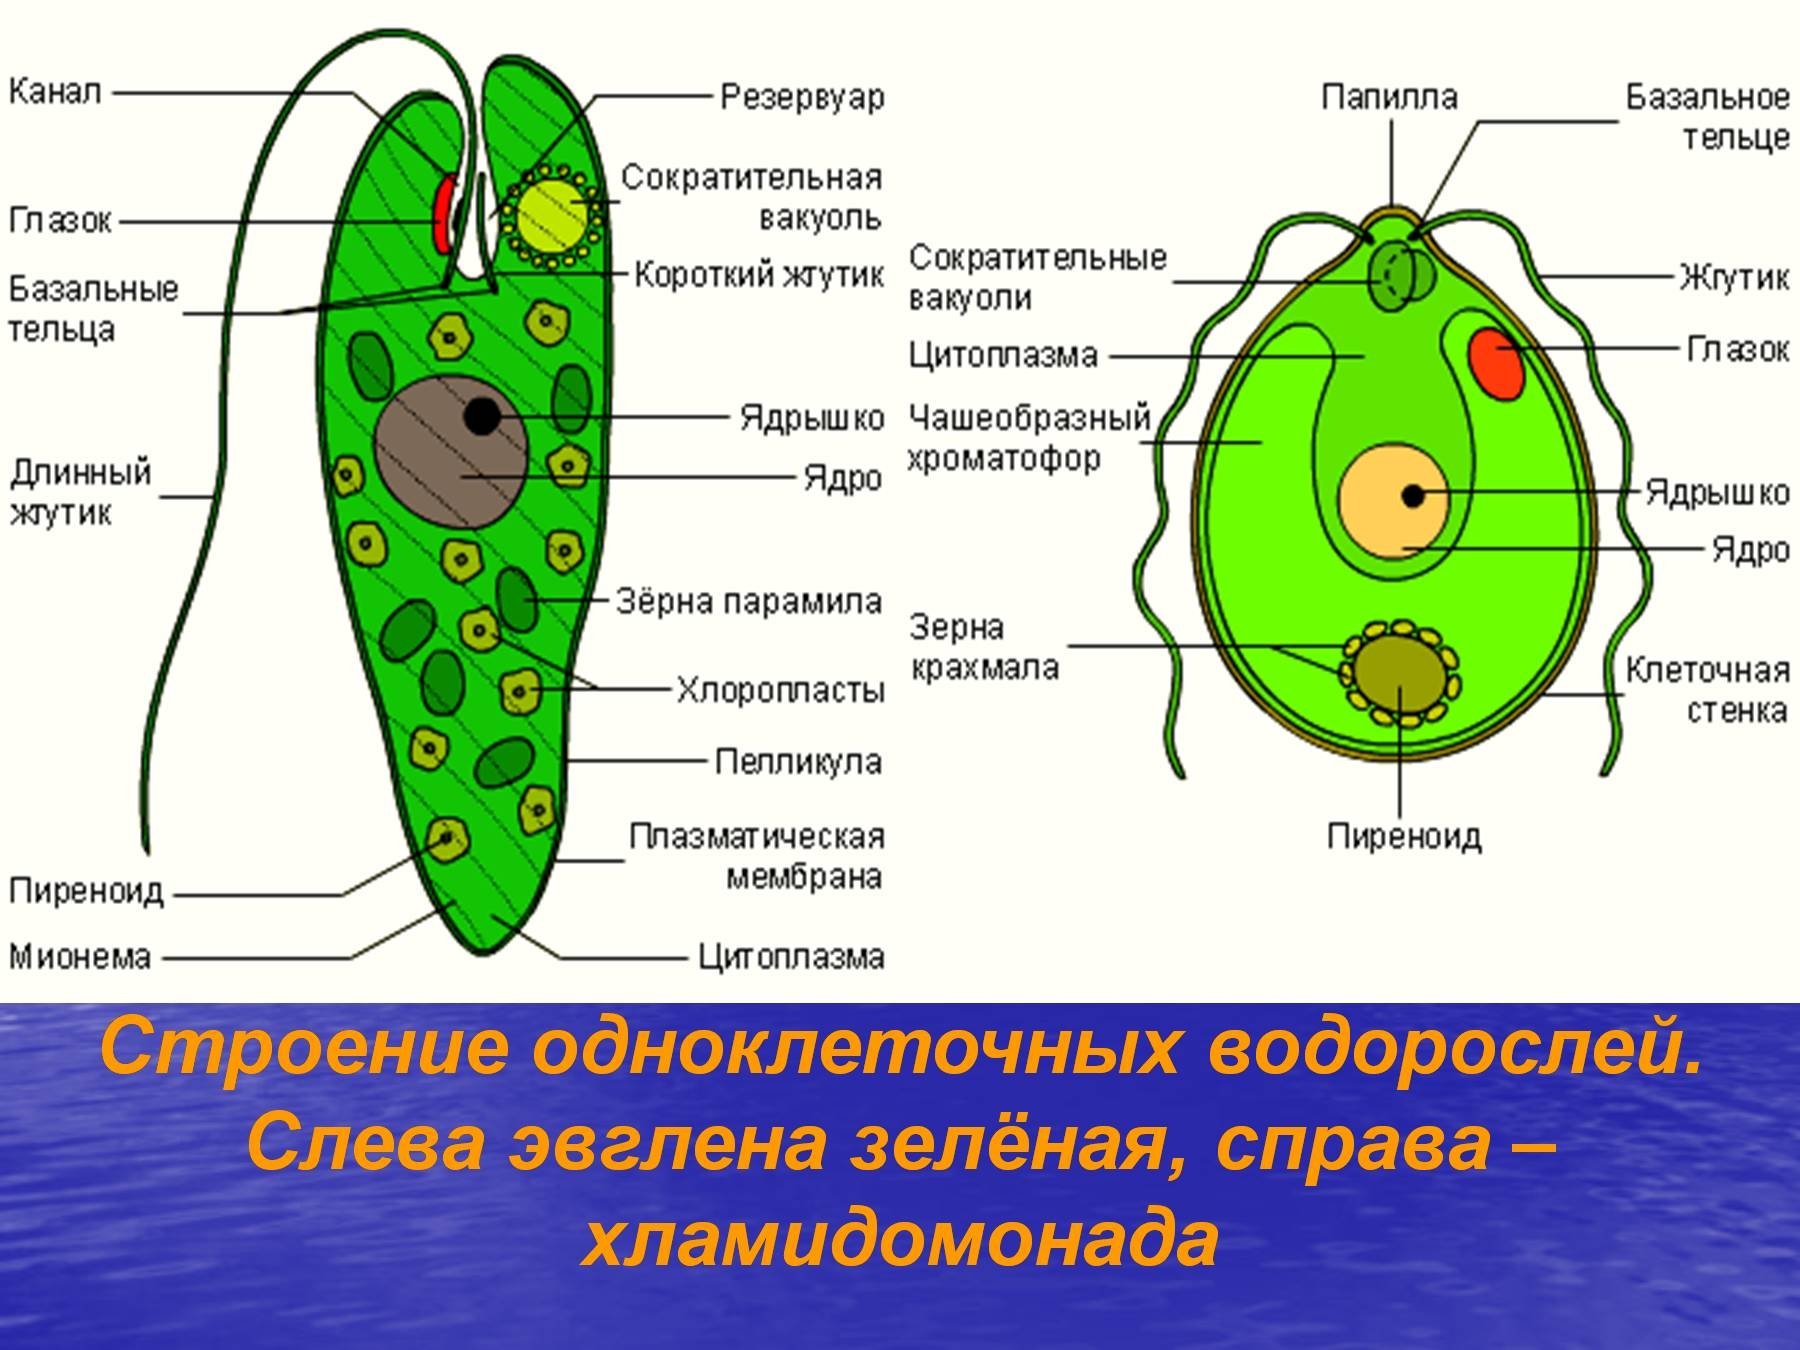 Одноклеточная зеленая водоросль хламидомонада